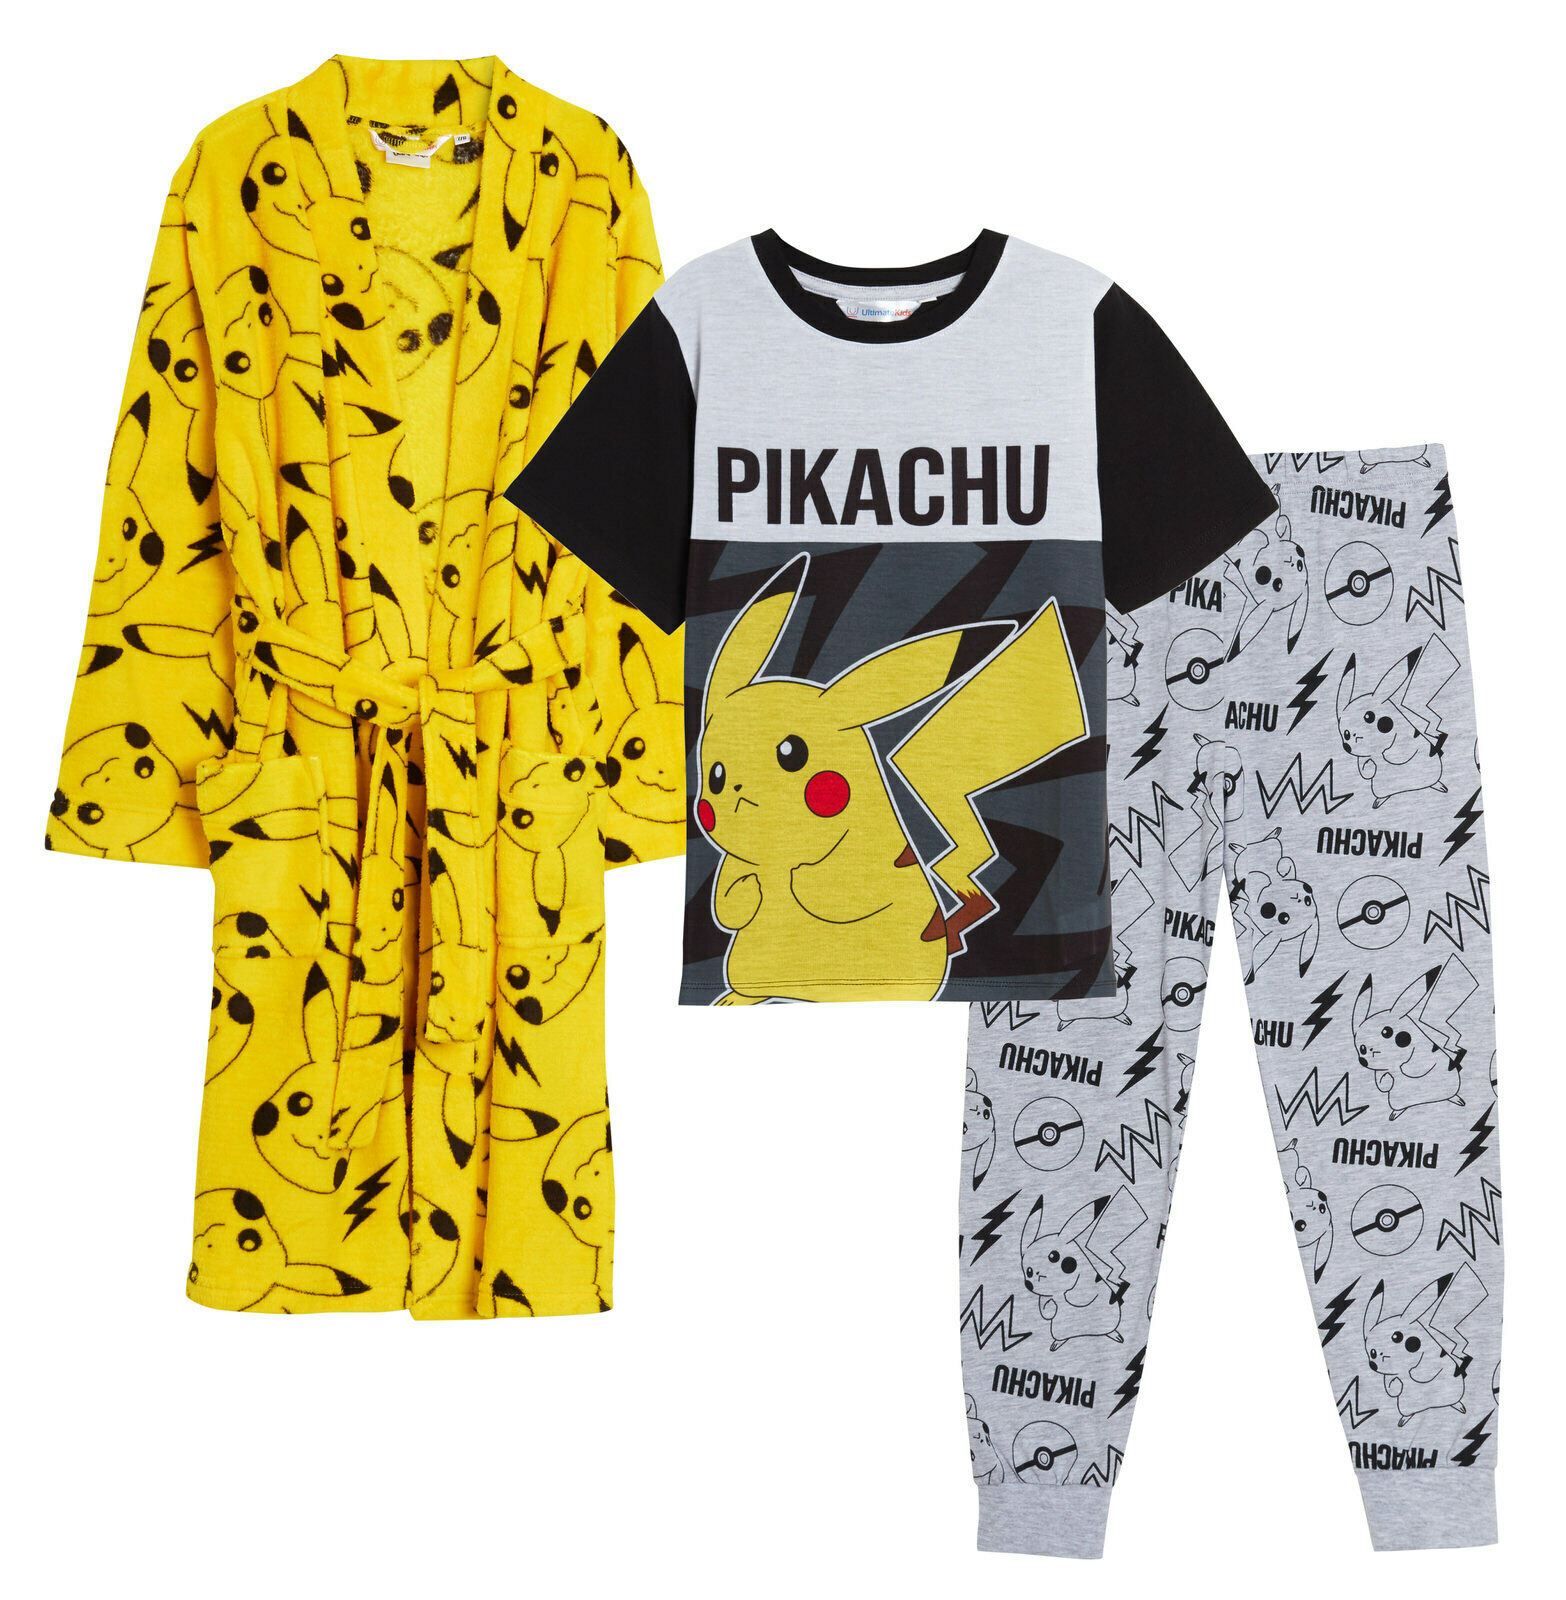 Pikachu set župan a pyžamo